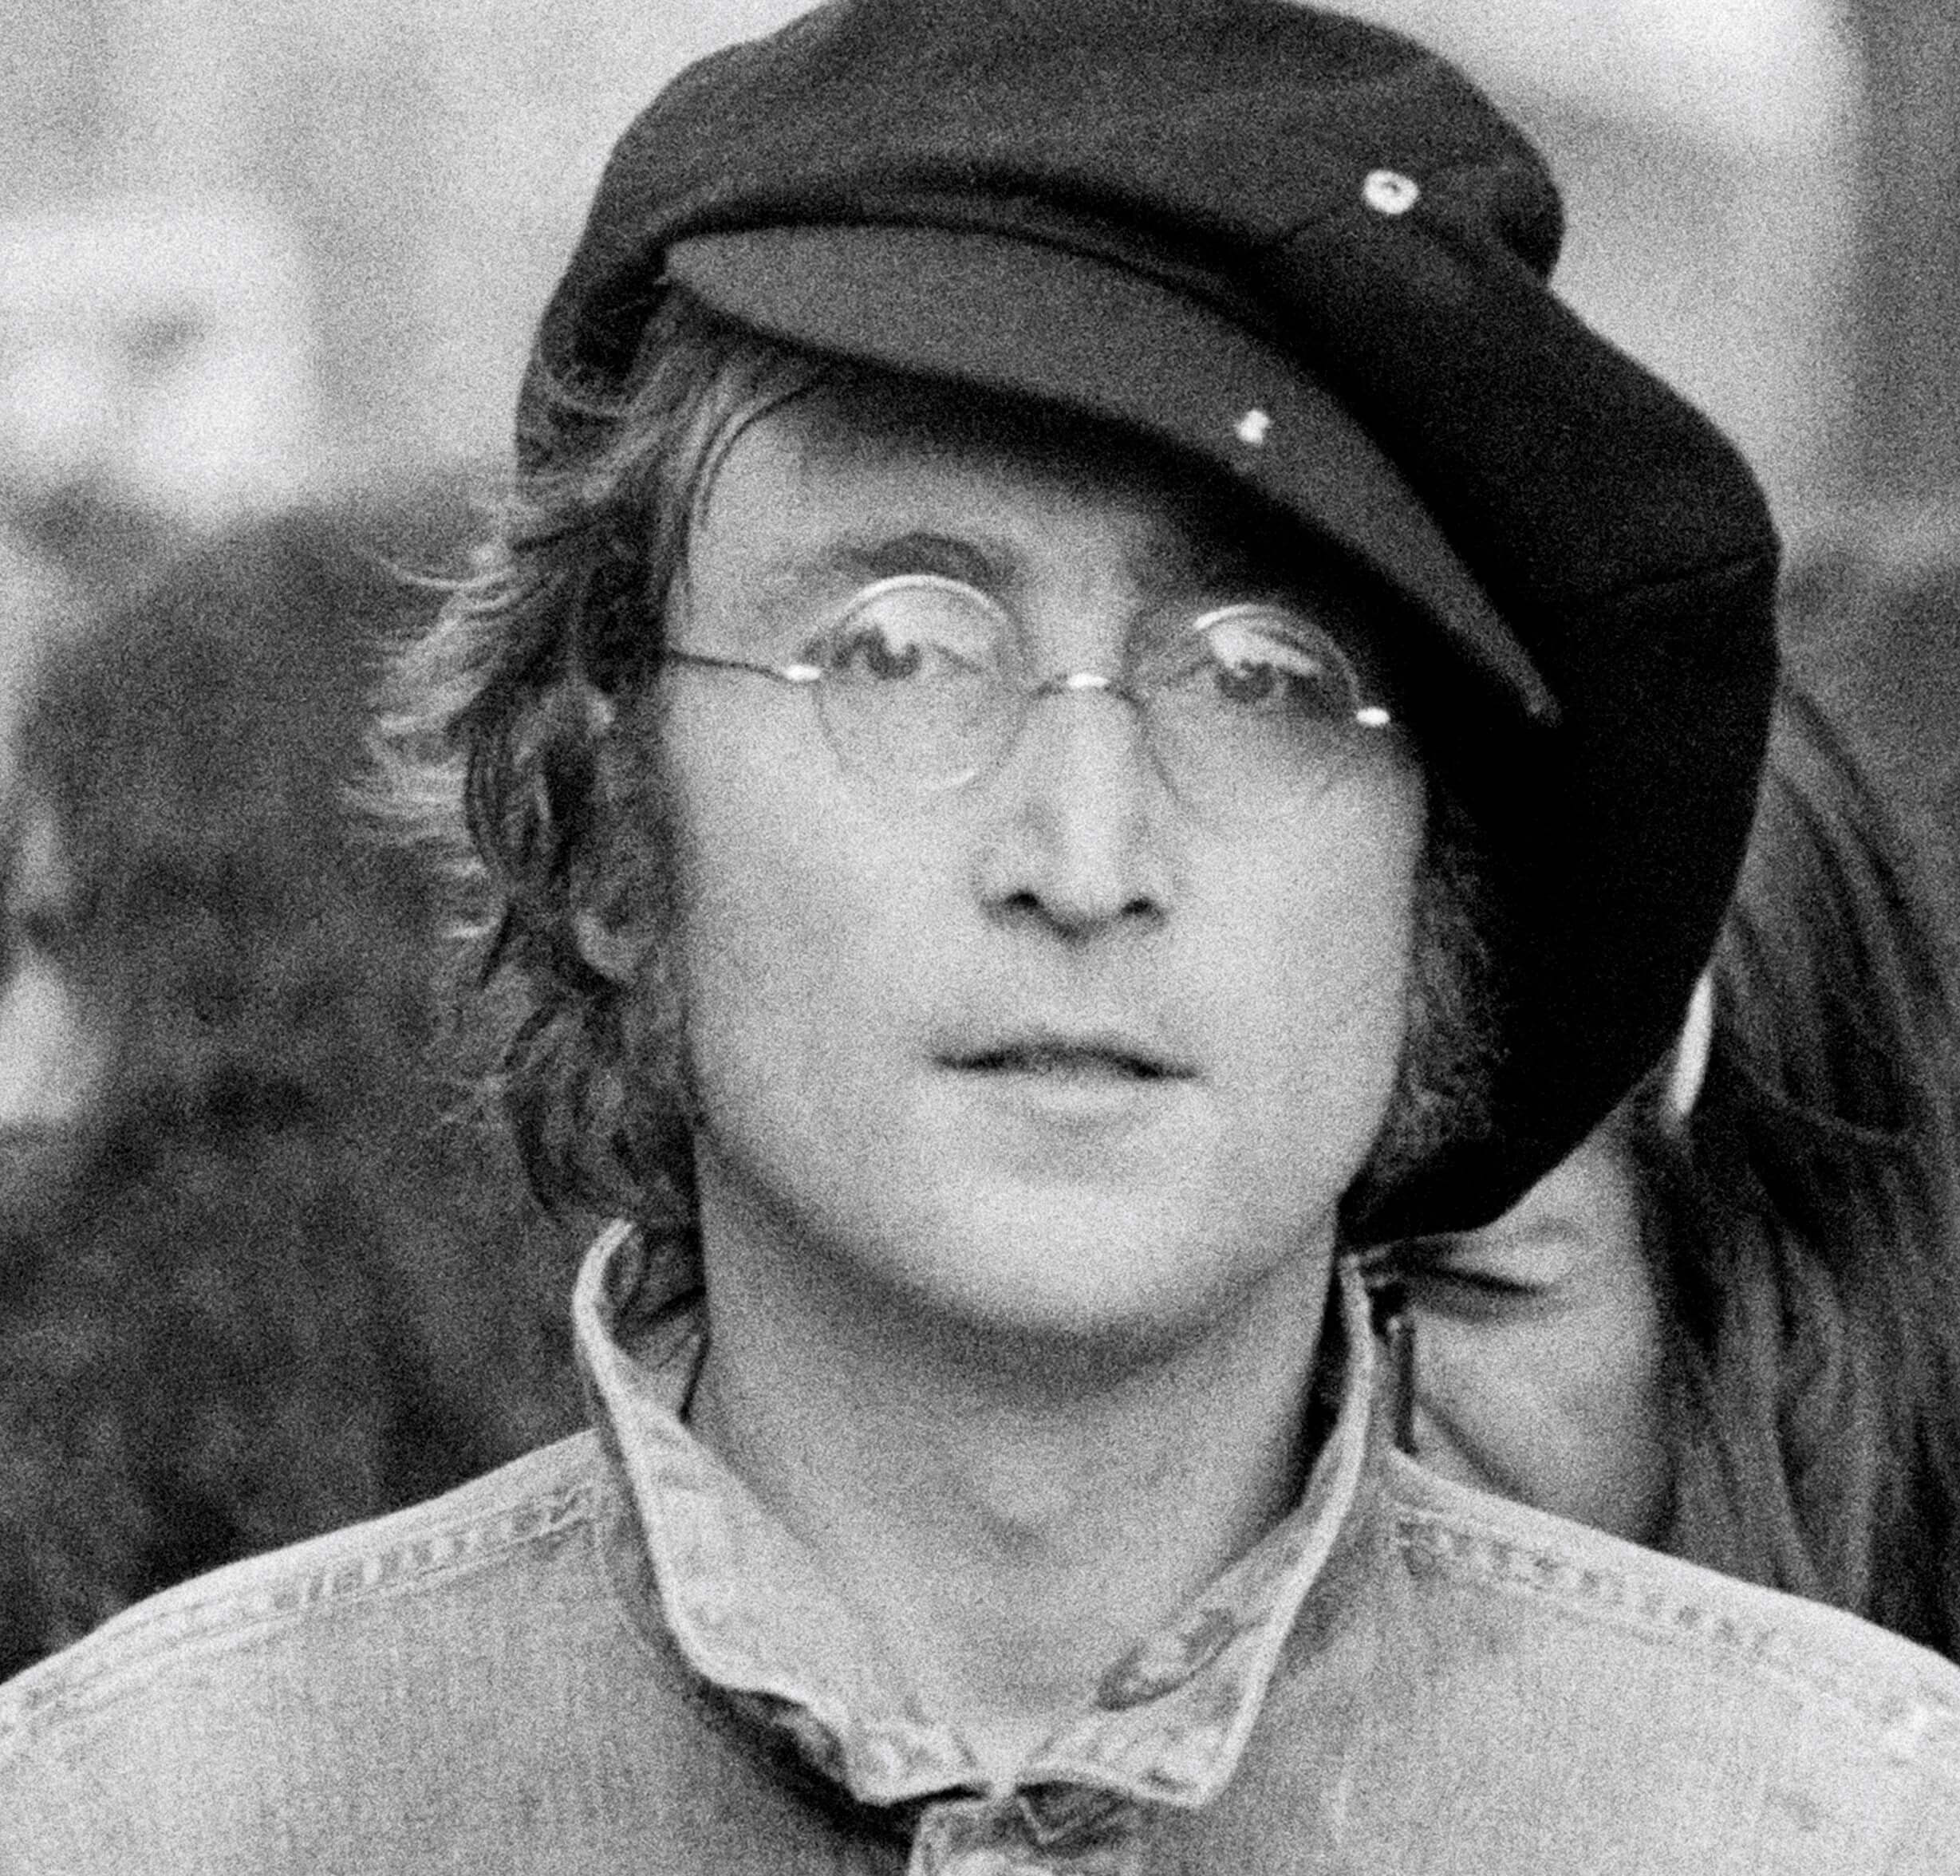 John Lennon in a hat